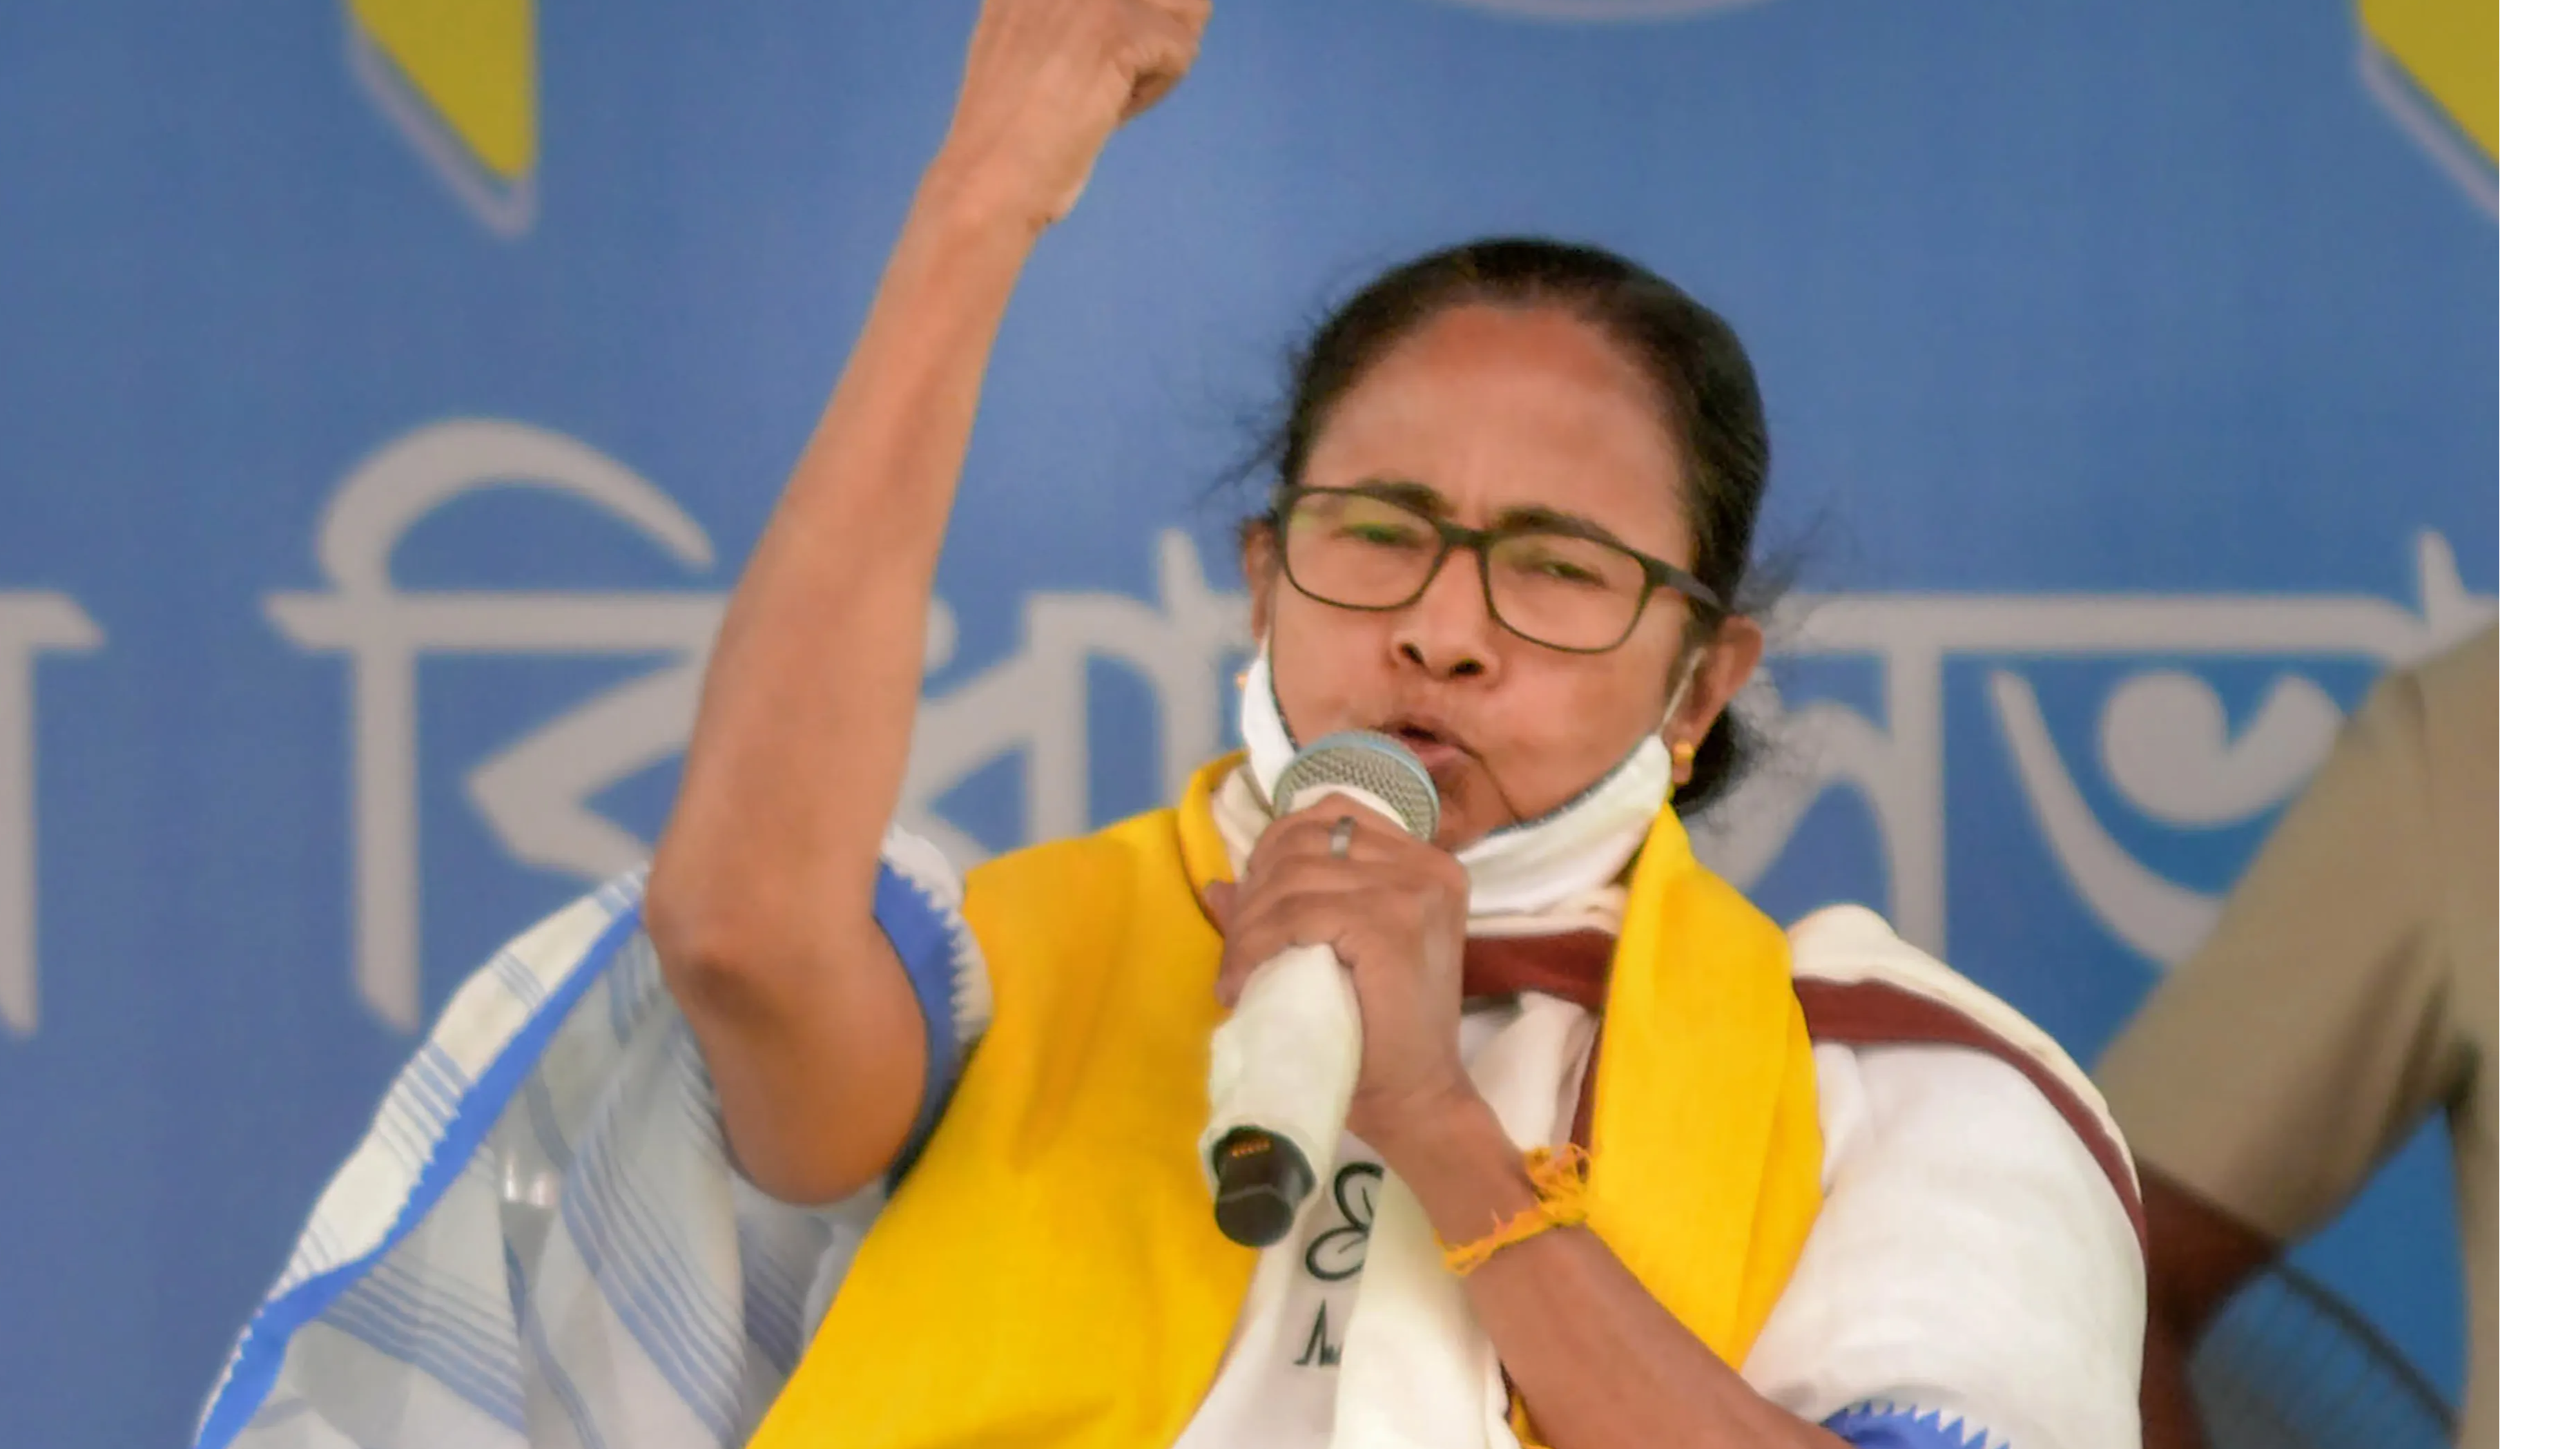 Not more than 25 seats: Mamata Banerjee’s dig at ‘dada with chubby cheeks’